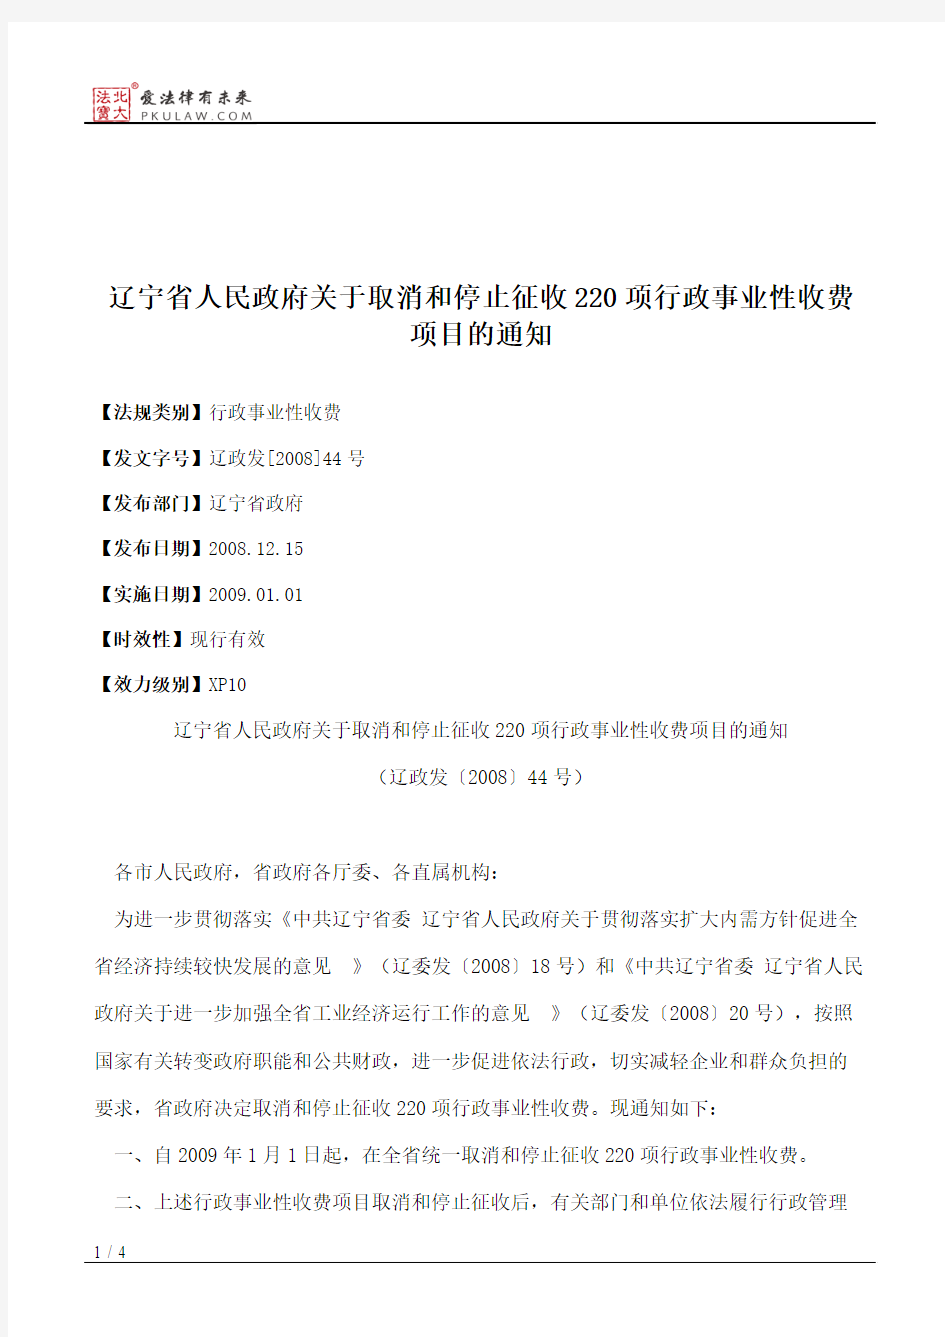 辽宁省人民政府关于取消和停止征收220项行政事业性收费项目的通知